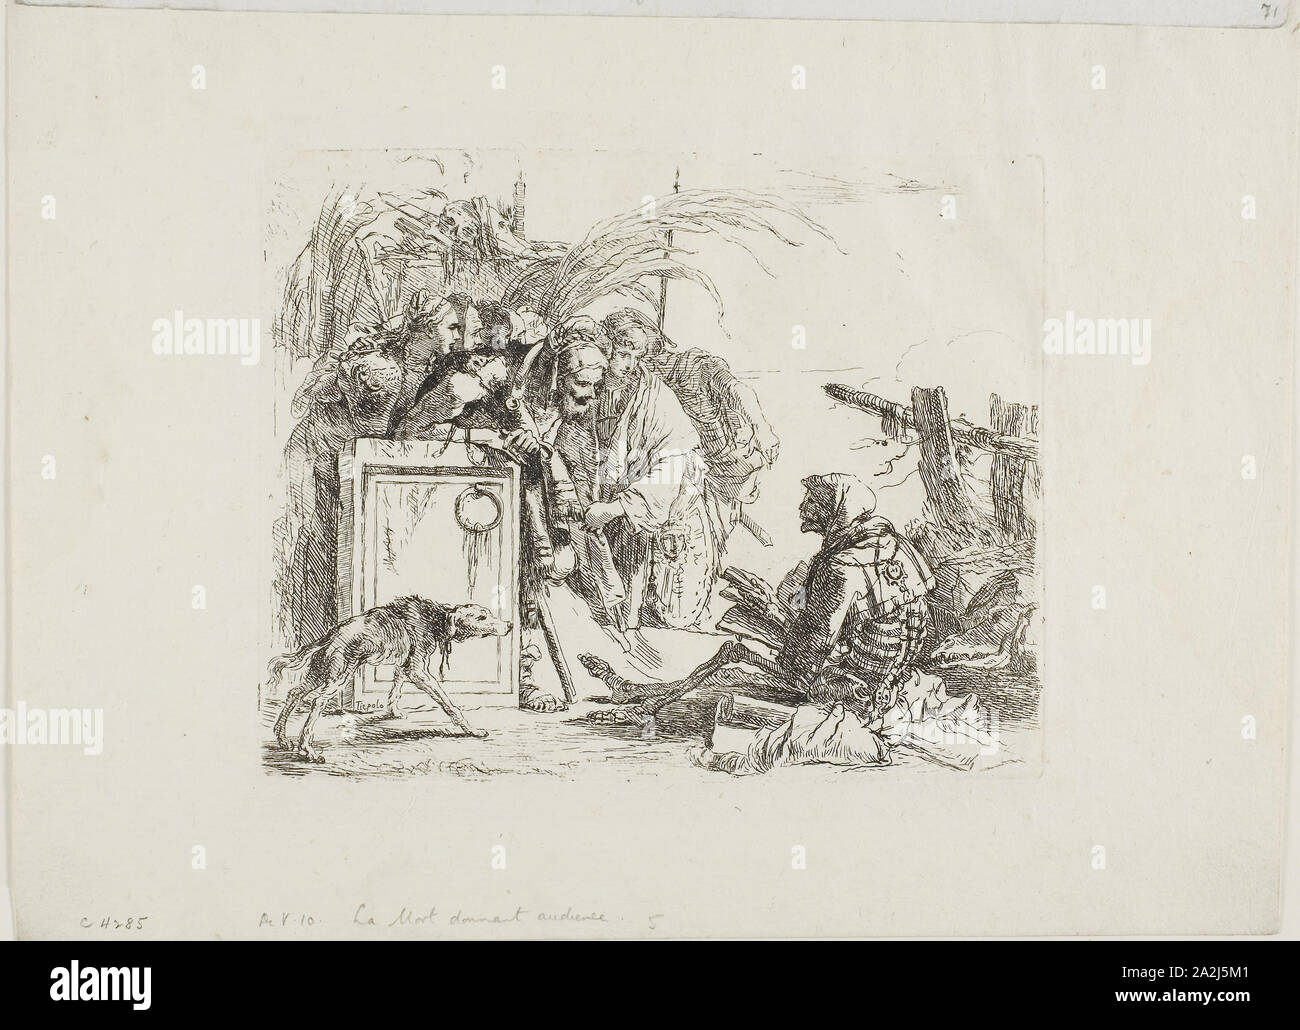 La morte di dare pubblico, dai capricci, 1740/50, pubblicato 1785, Giambattista Tiepolo, Italiano, 1696-1770, Italia, incisione su carta, 141 x 177 mm Foto Stock